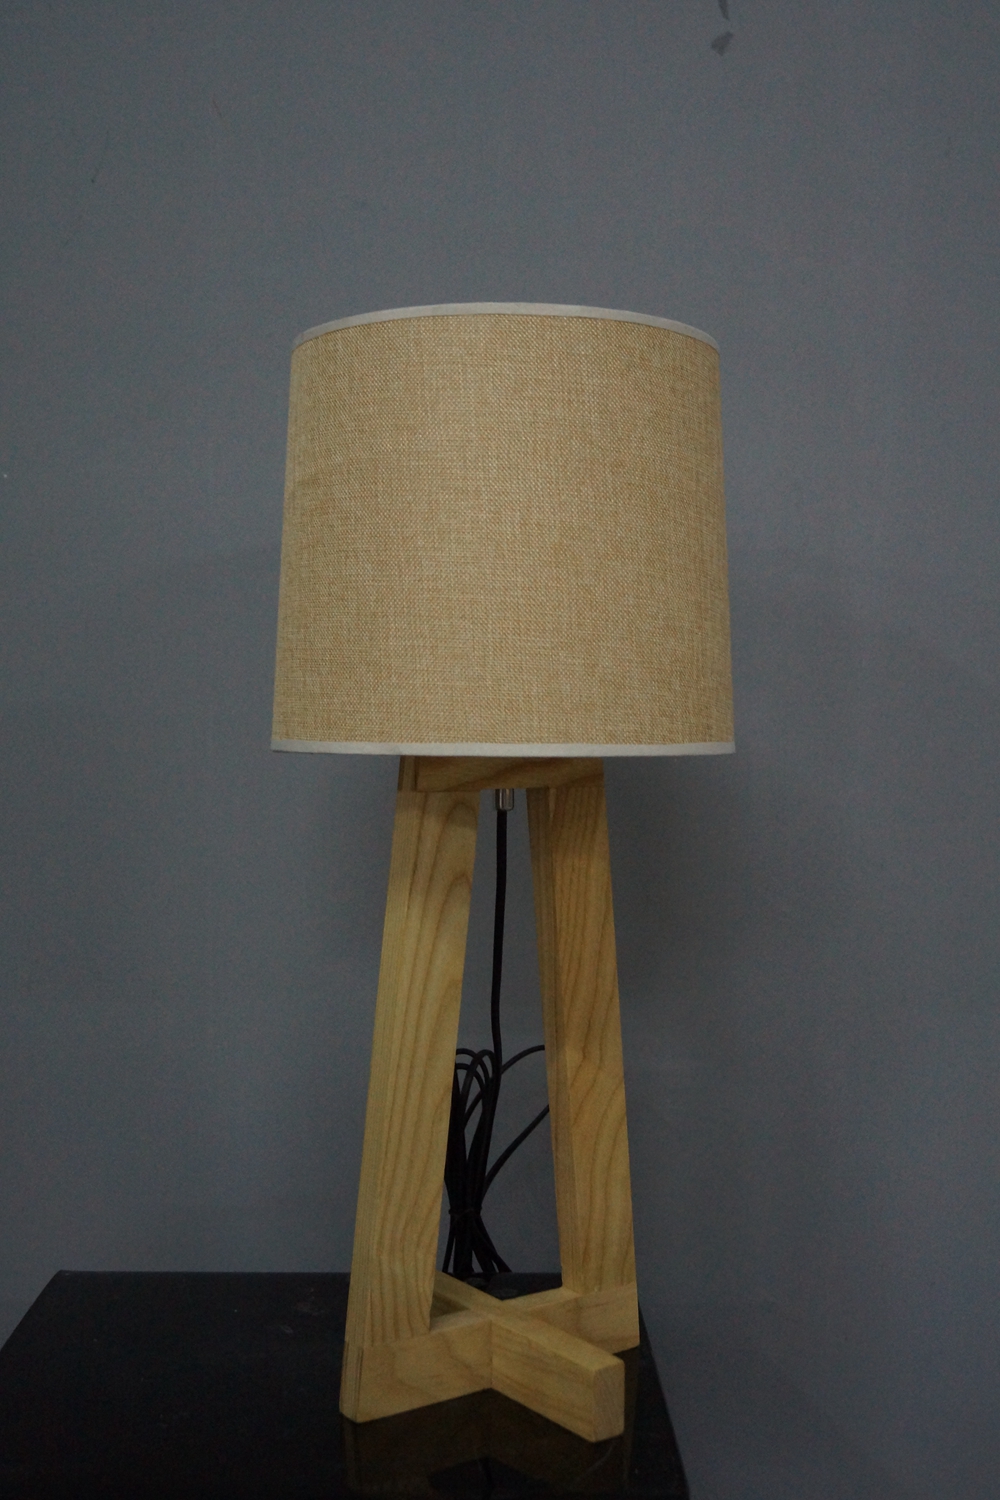 مصباح طاولة خشبية للاستخدام المنزلي (LBMT-BL)